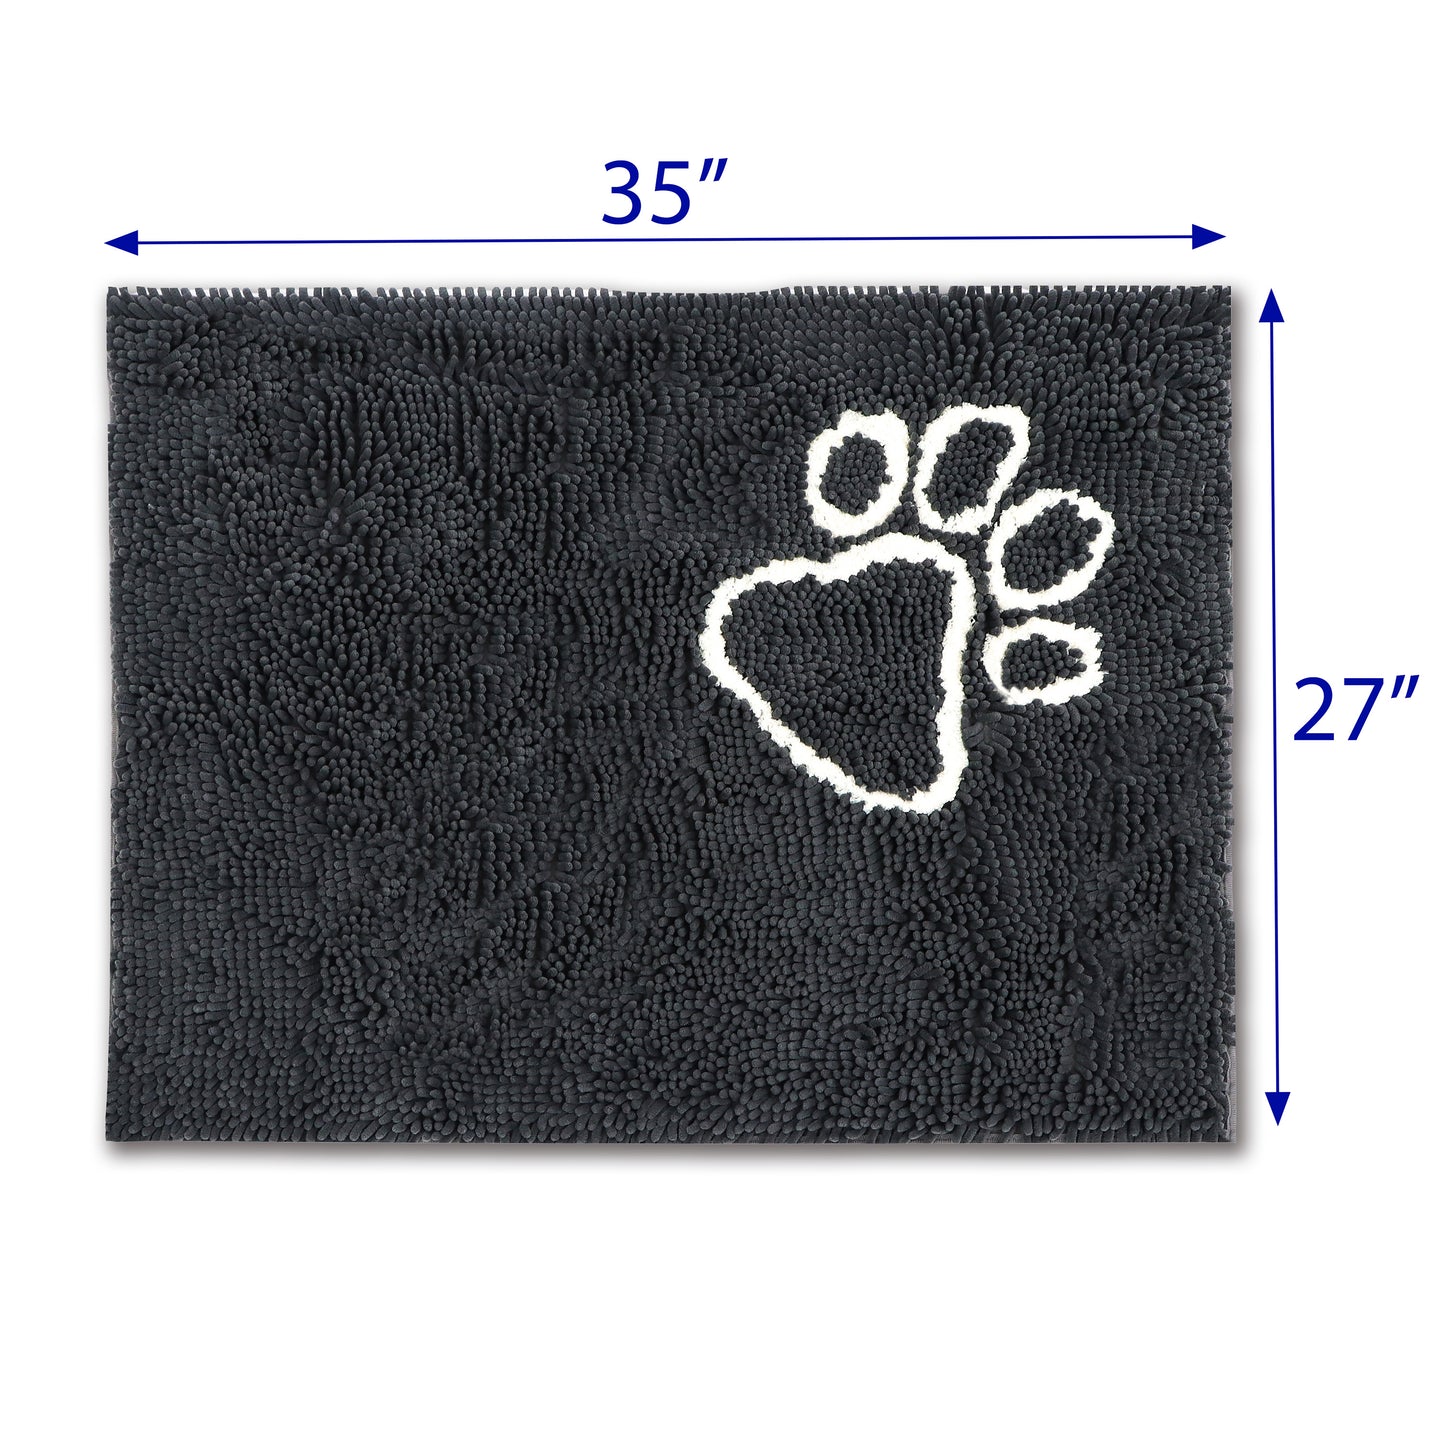 Dirty Dog Doormat Medium- Pet Door Mats